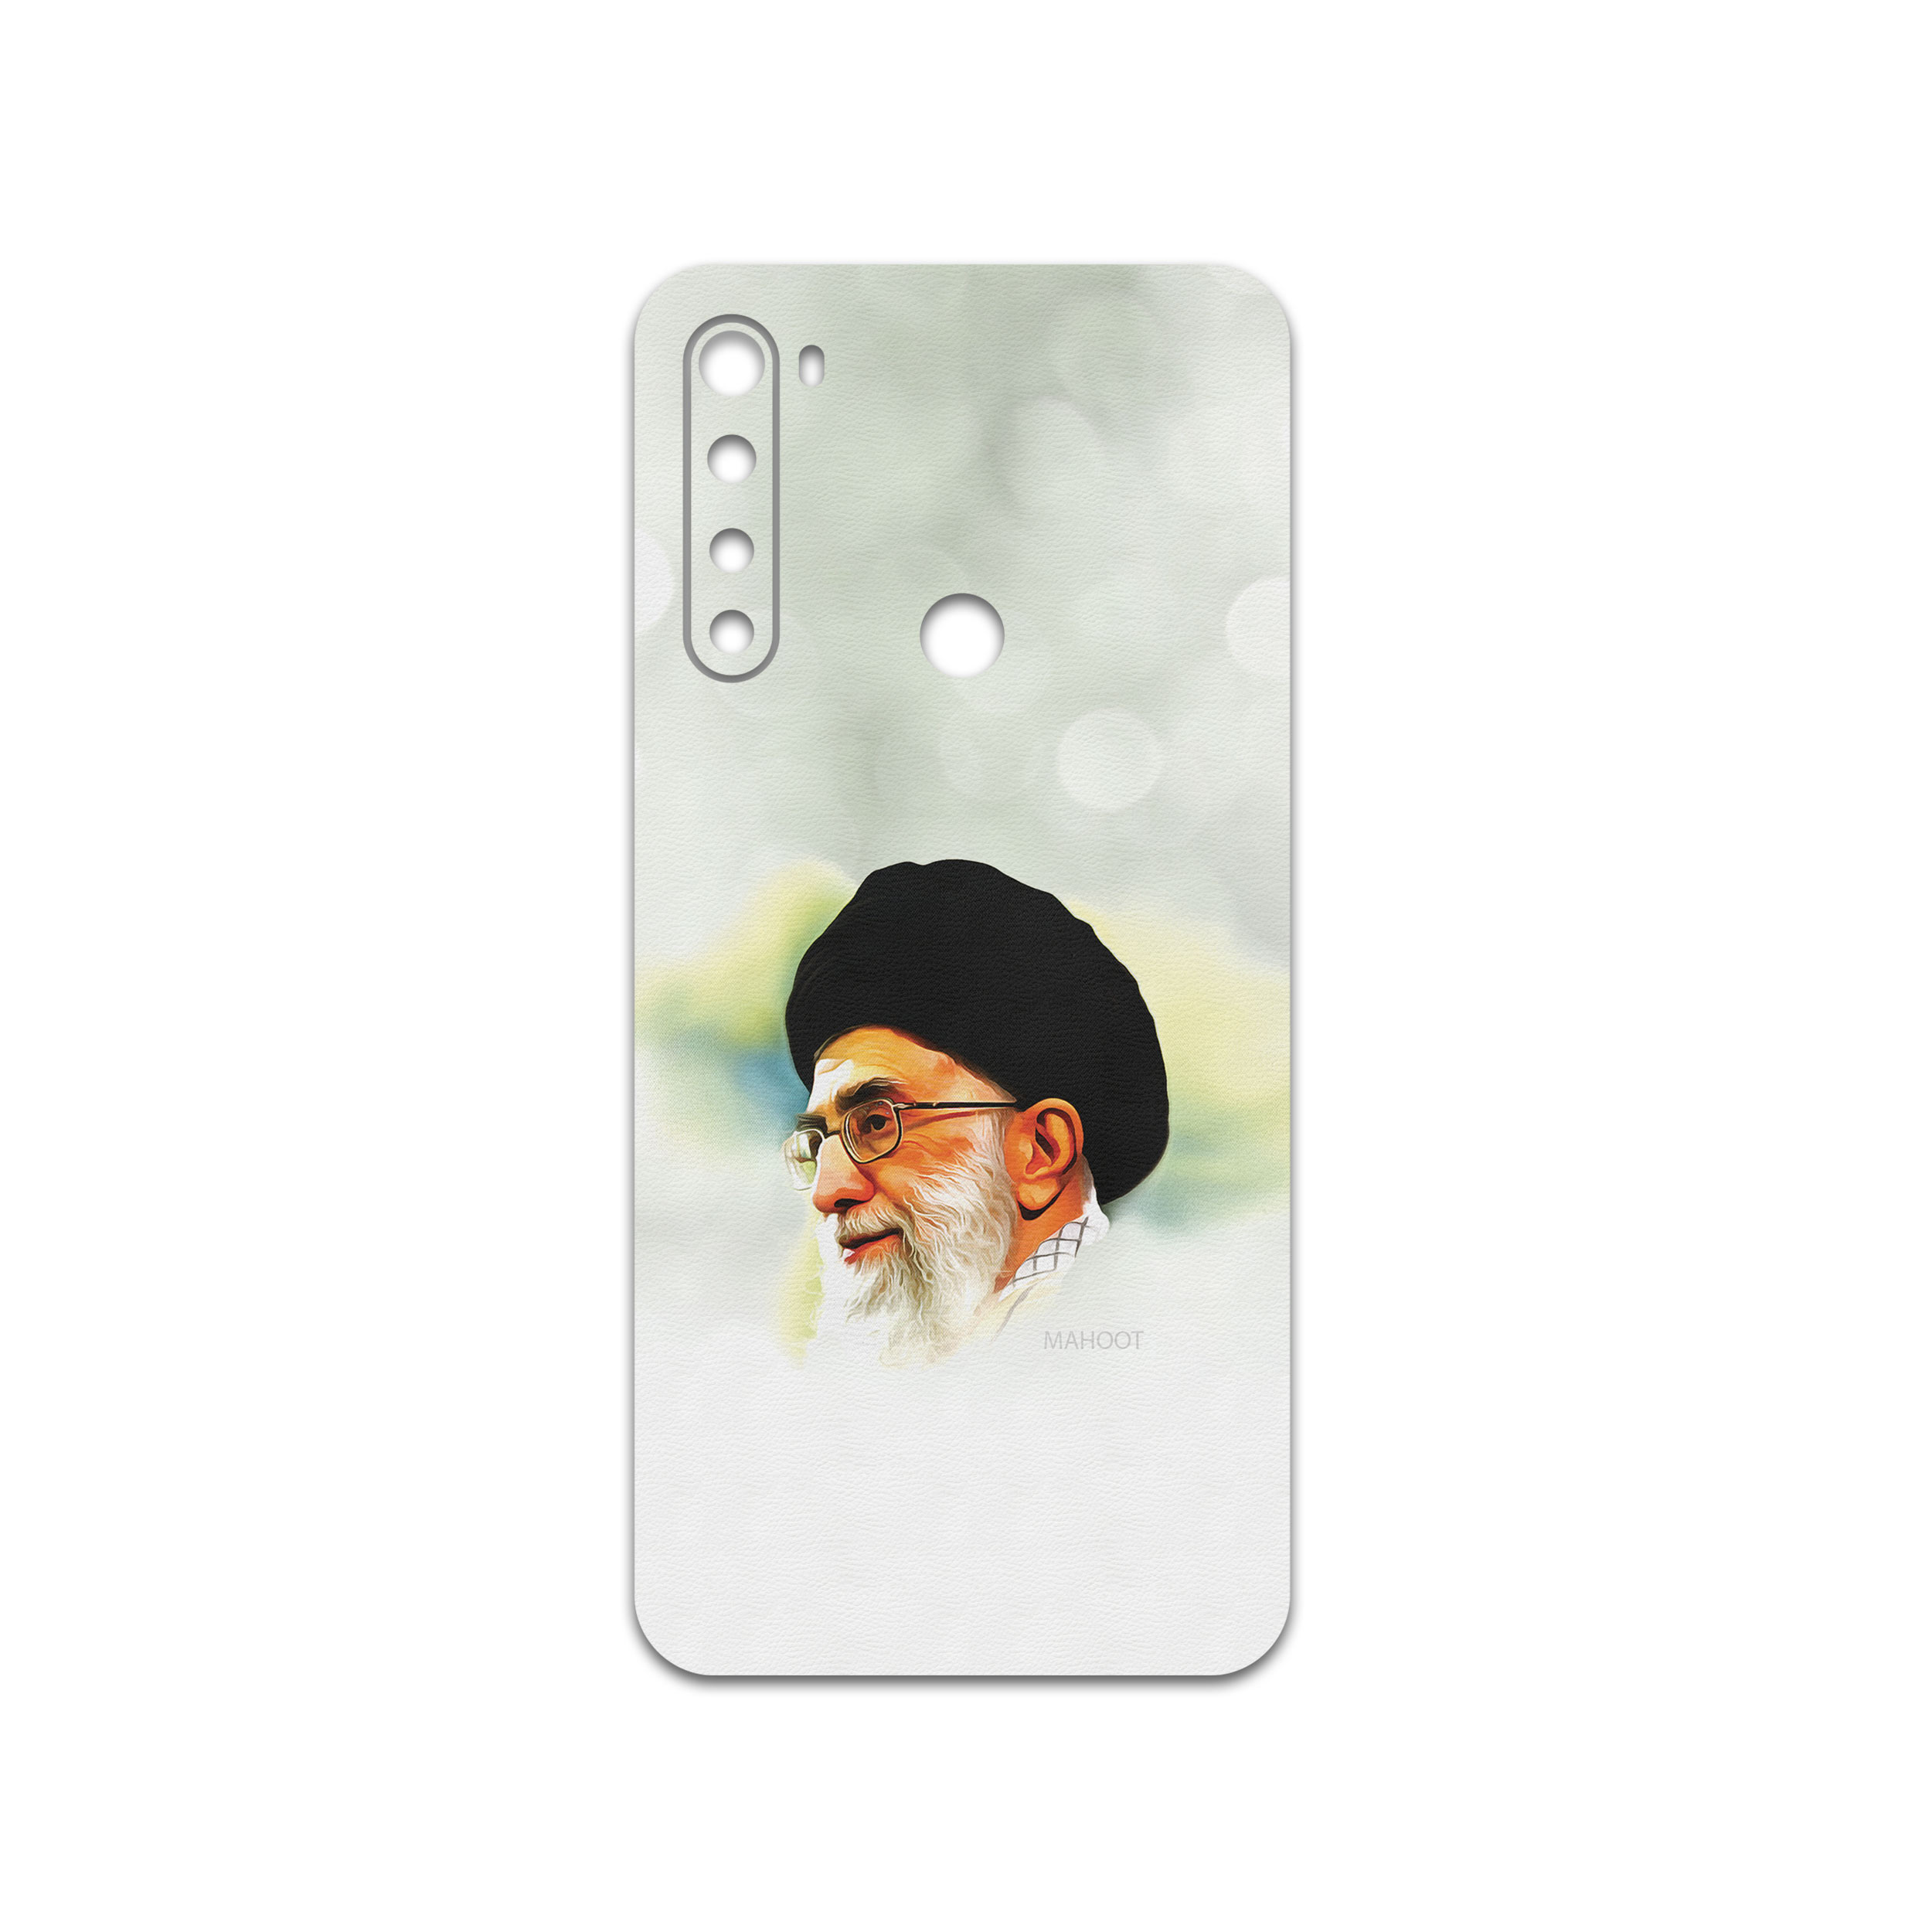 نقد و بررسی برچسب پوششی ماهوت مدل Iran Leader مناسب برای گوشی موبایل شیایومی Redmi Note 8 توسط خریداران